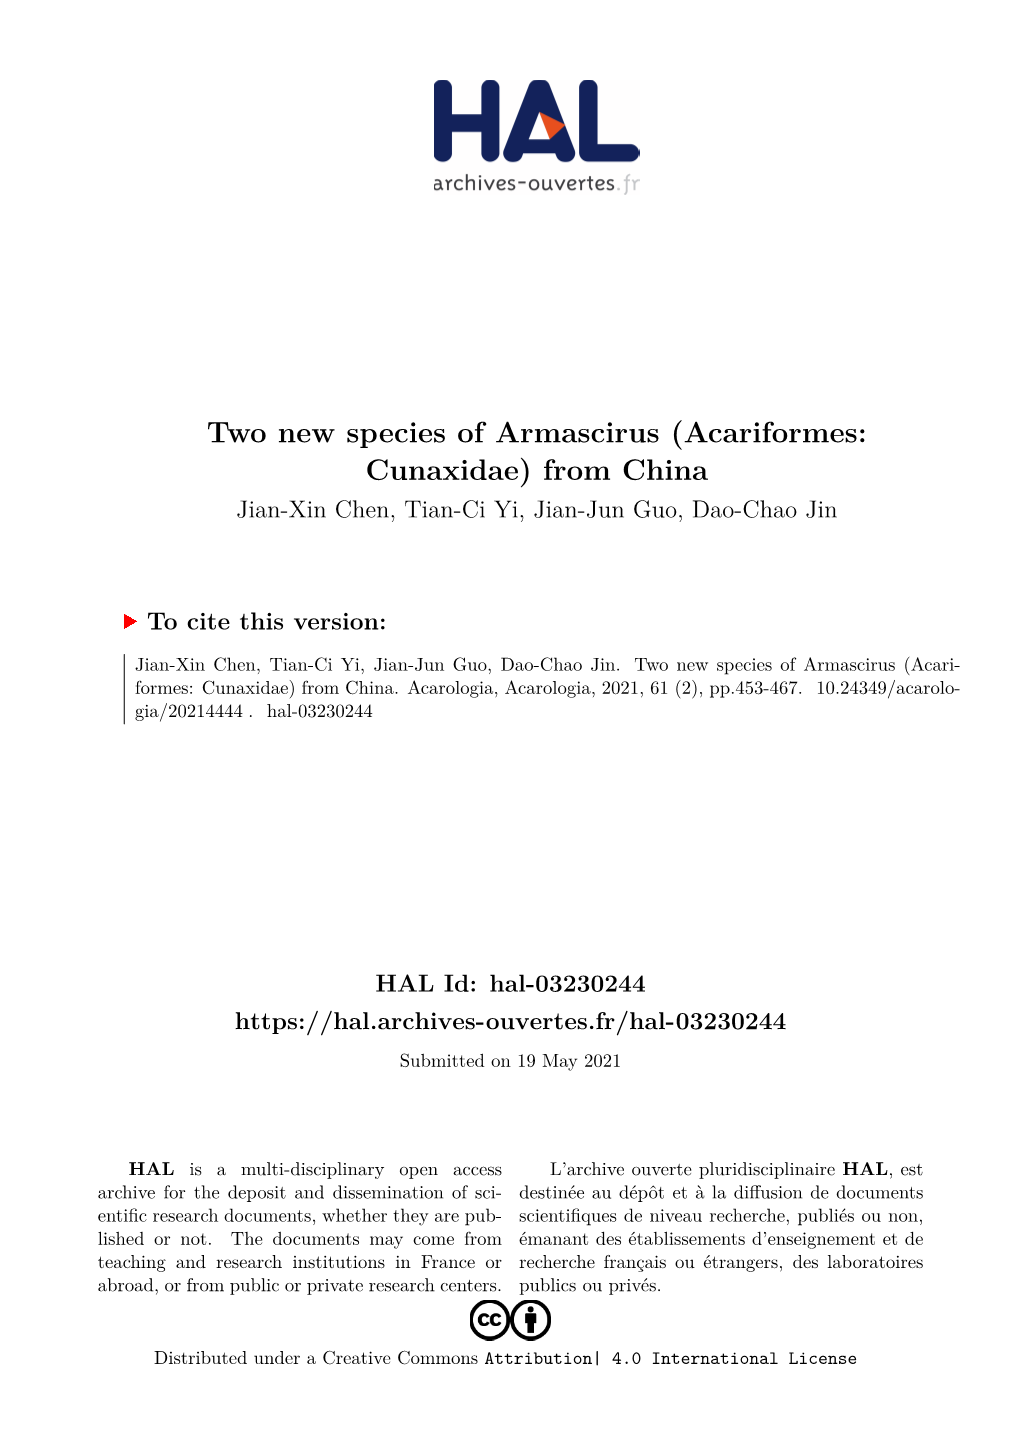 Two New Species of Armascirus (Acariformes: Cunaxidae) from China Jian-Xin Chen, Tian-Ci Yi, Jian-Jun Guo, Dao-Chao Jin